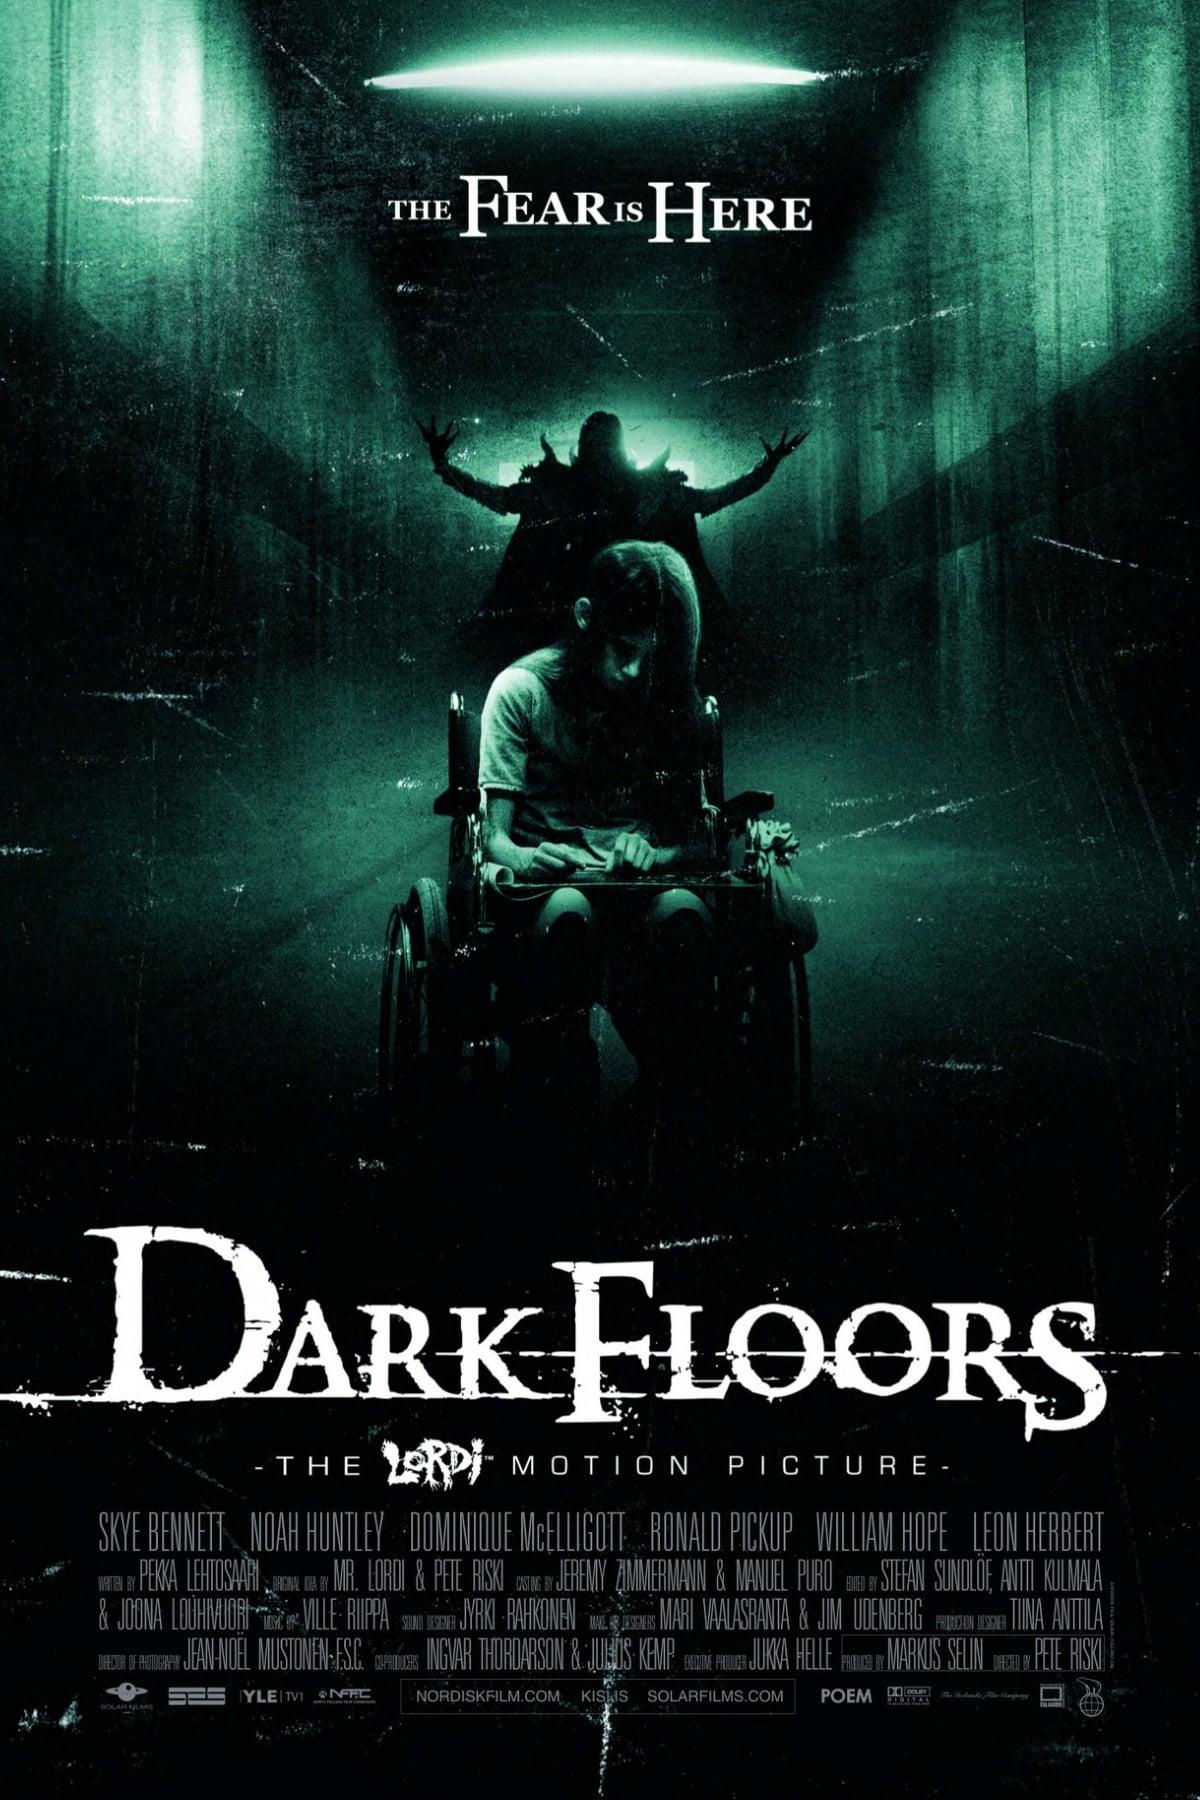 Dark Floors poster